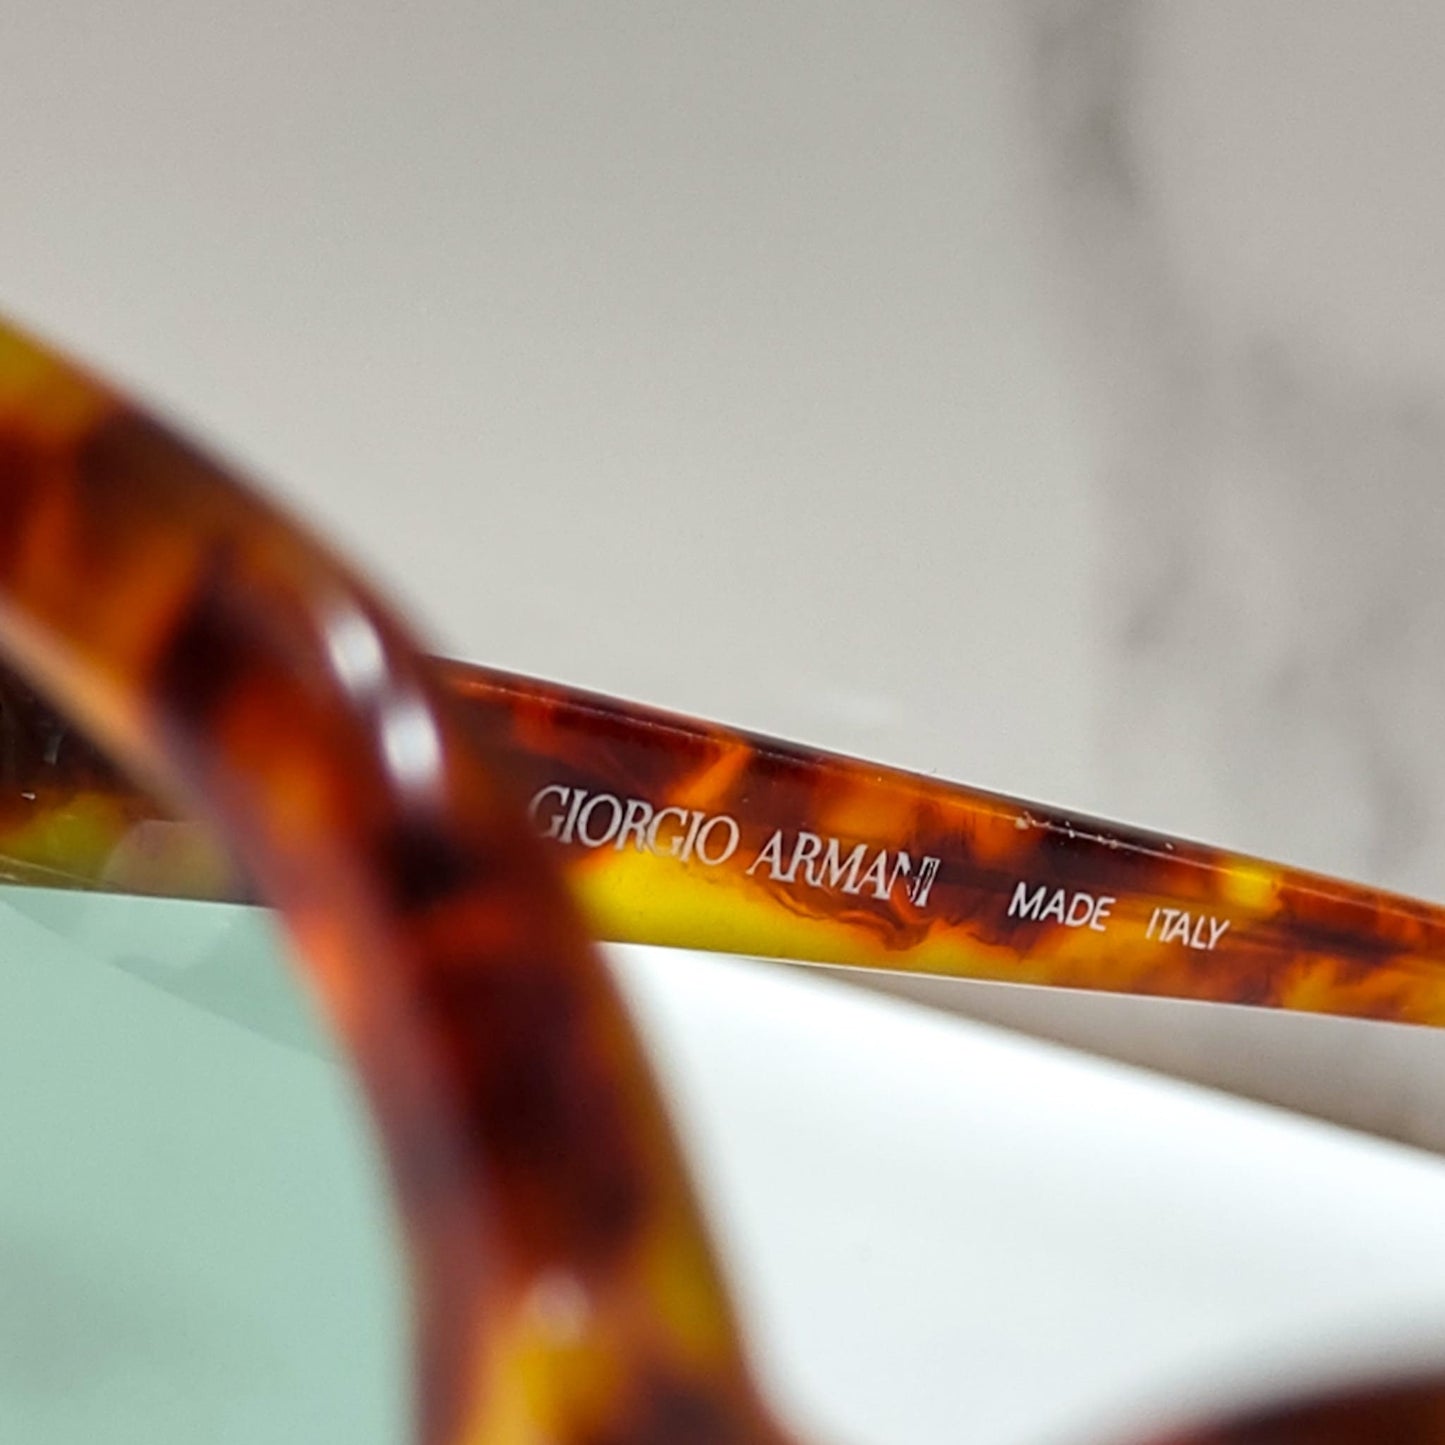 Occhiali da sole Giorgio Armani 920 occhiali lunetta brille anni '90